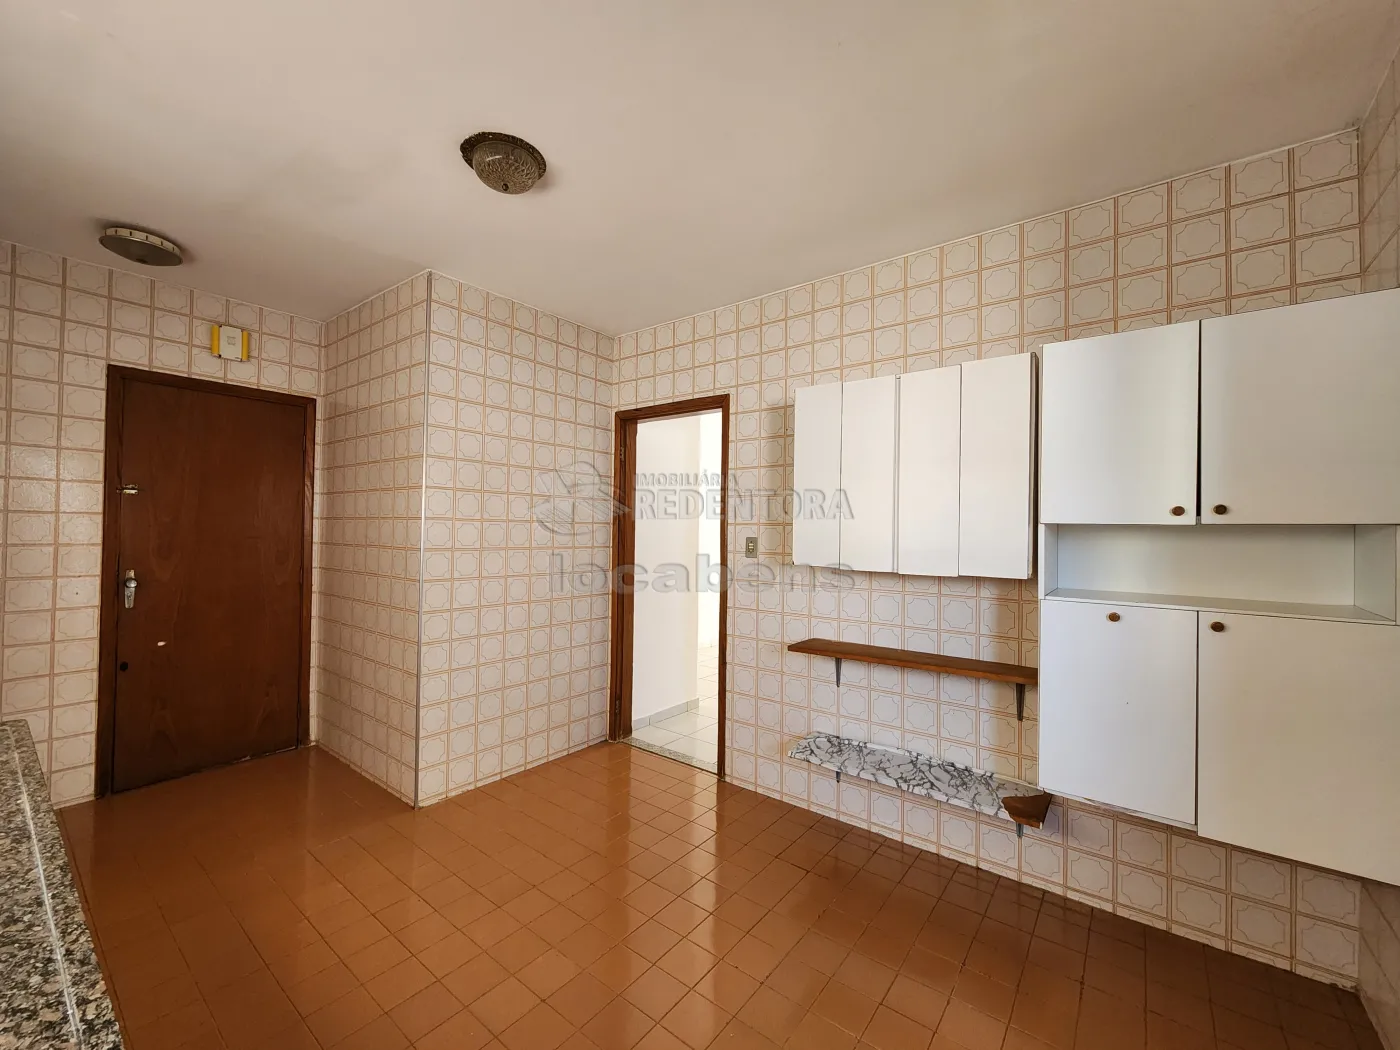 Alugar Apartamento / Padrão em São José do Rio Preto R$ 1.700,00 - Foto 5